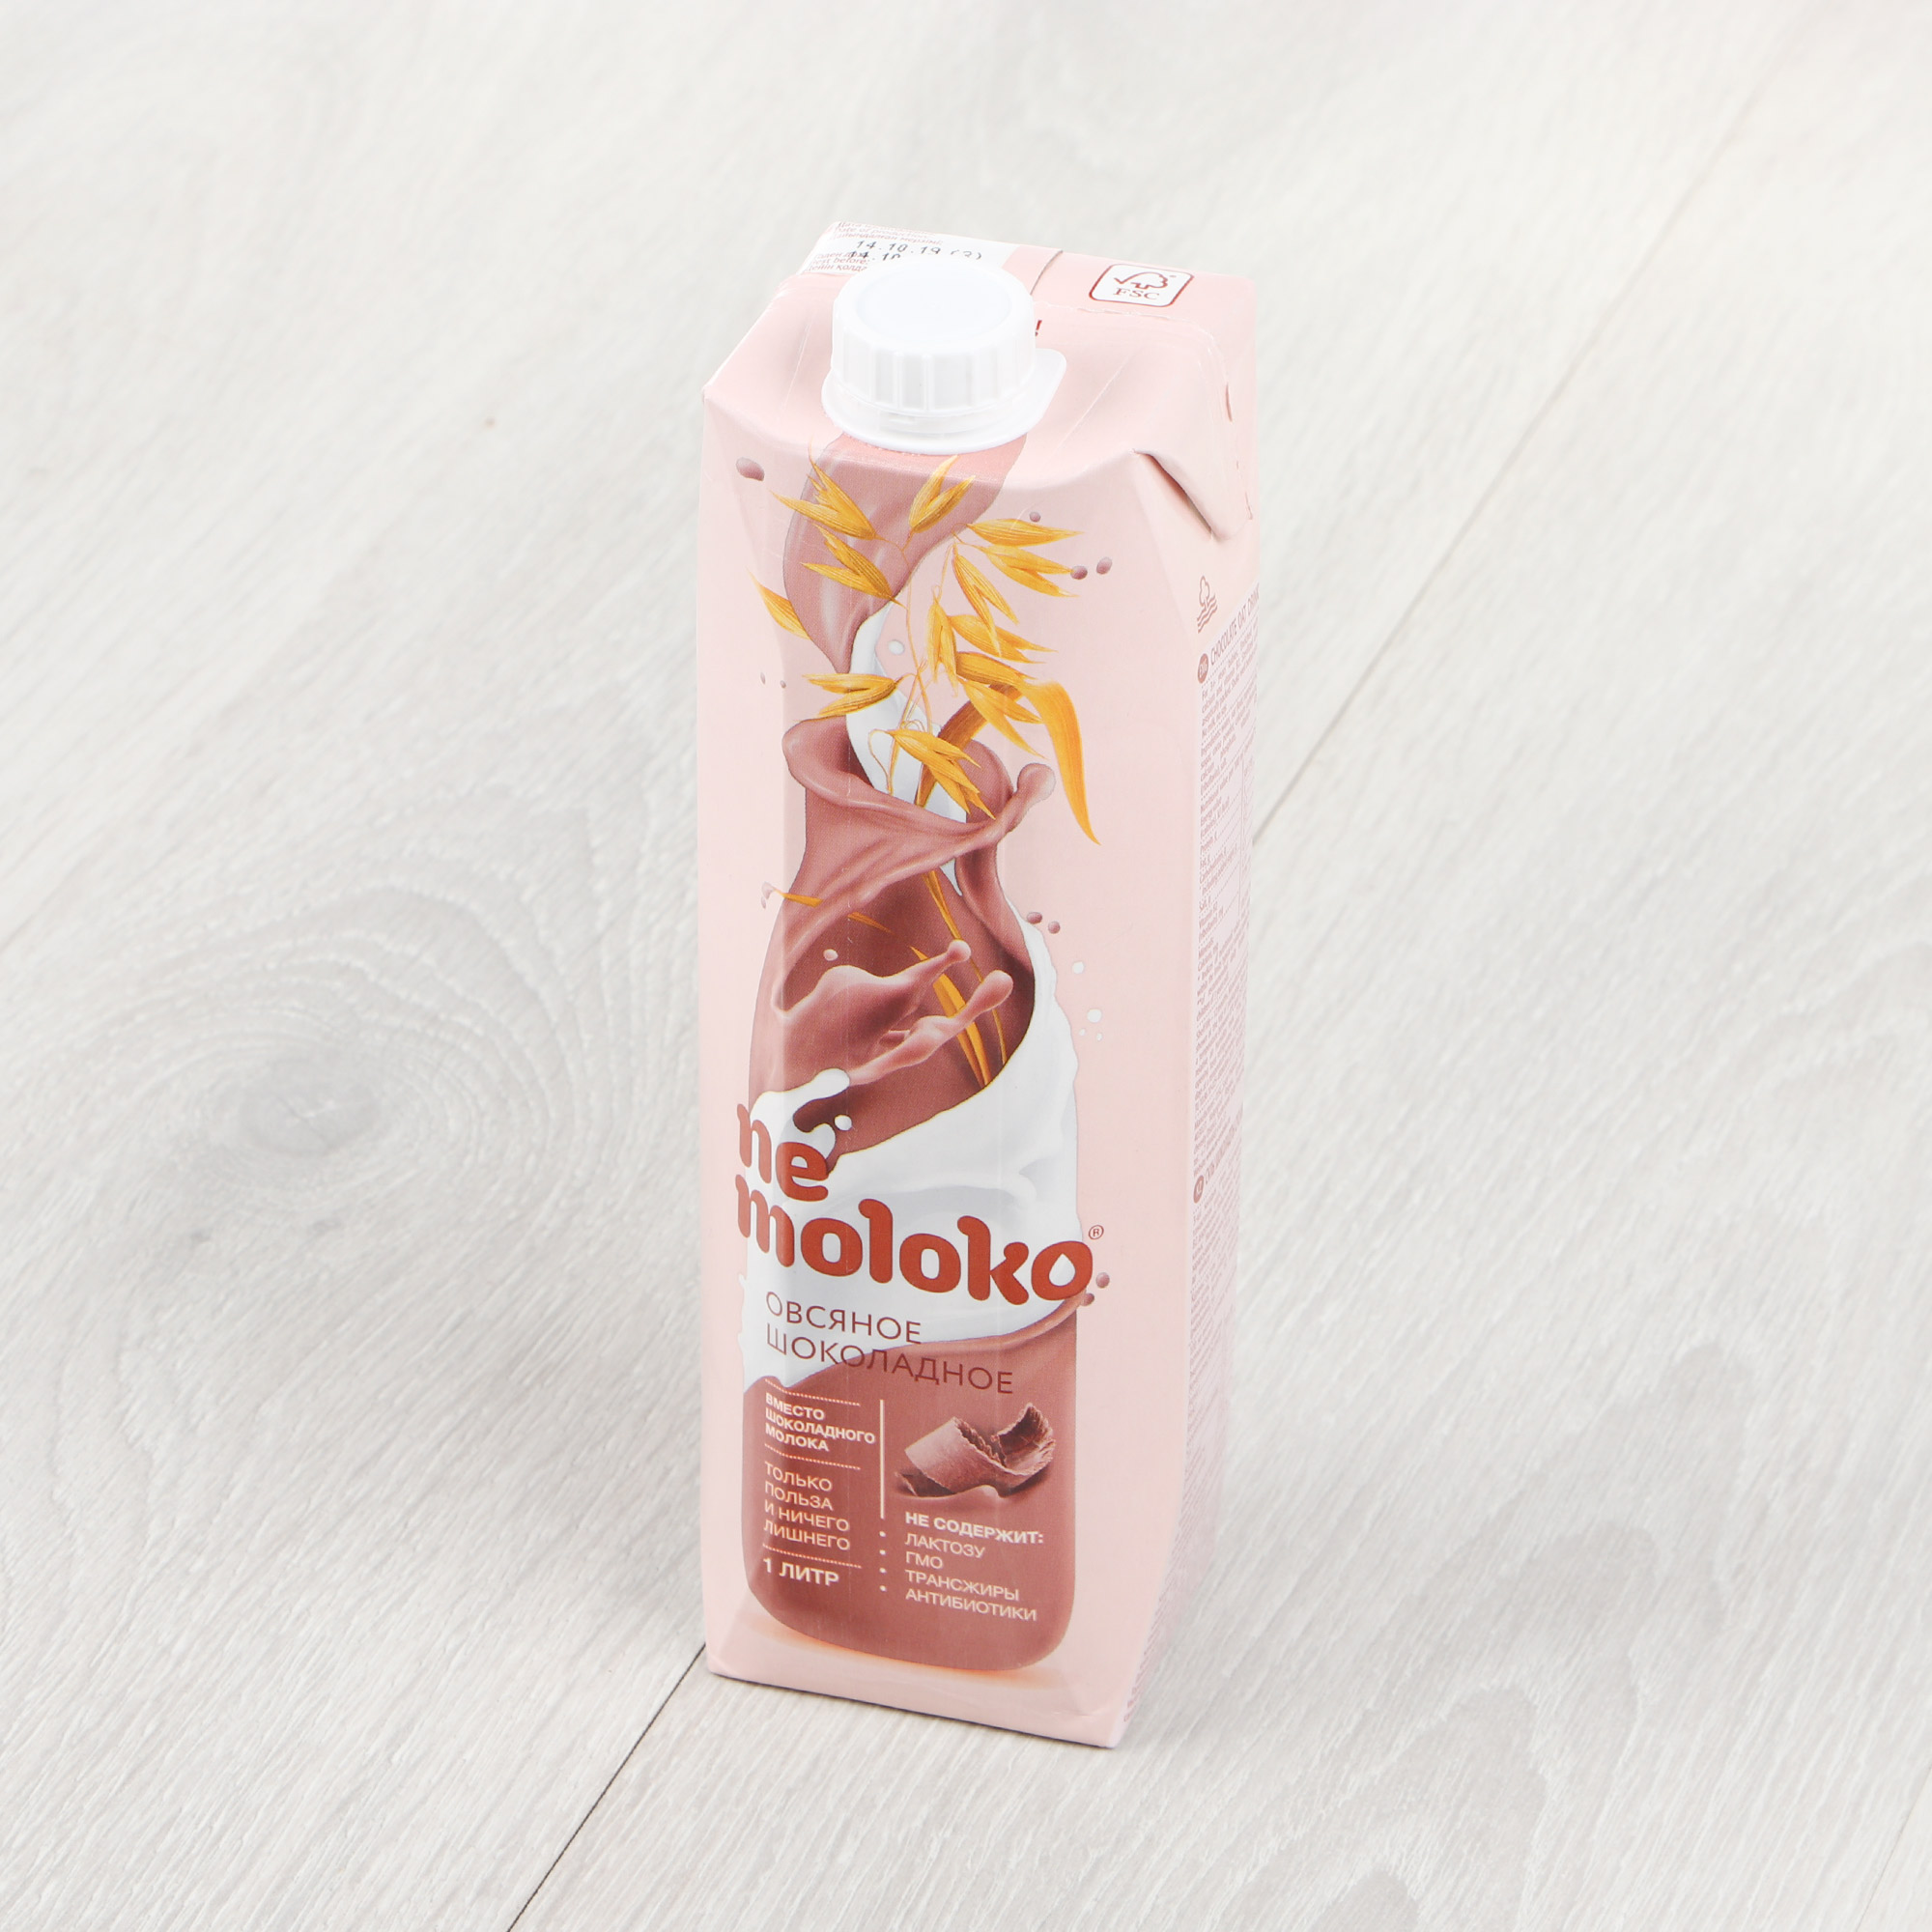 Напиток Nemoloko овсяный шоколадный 3,2% 1 л